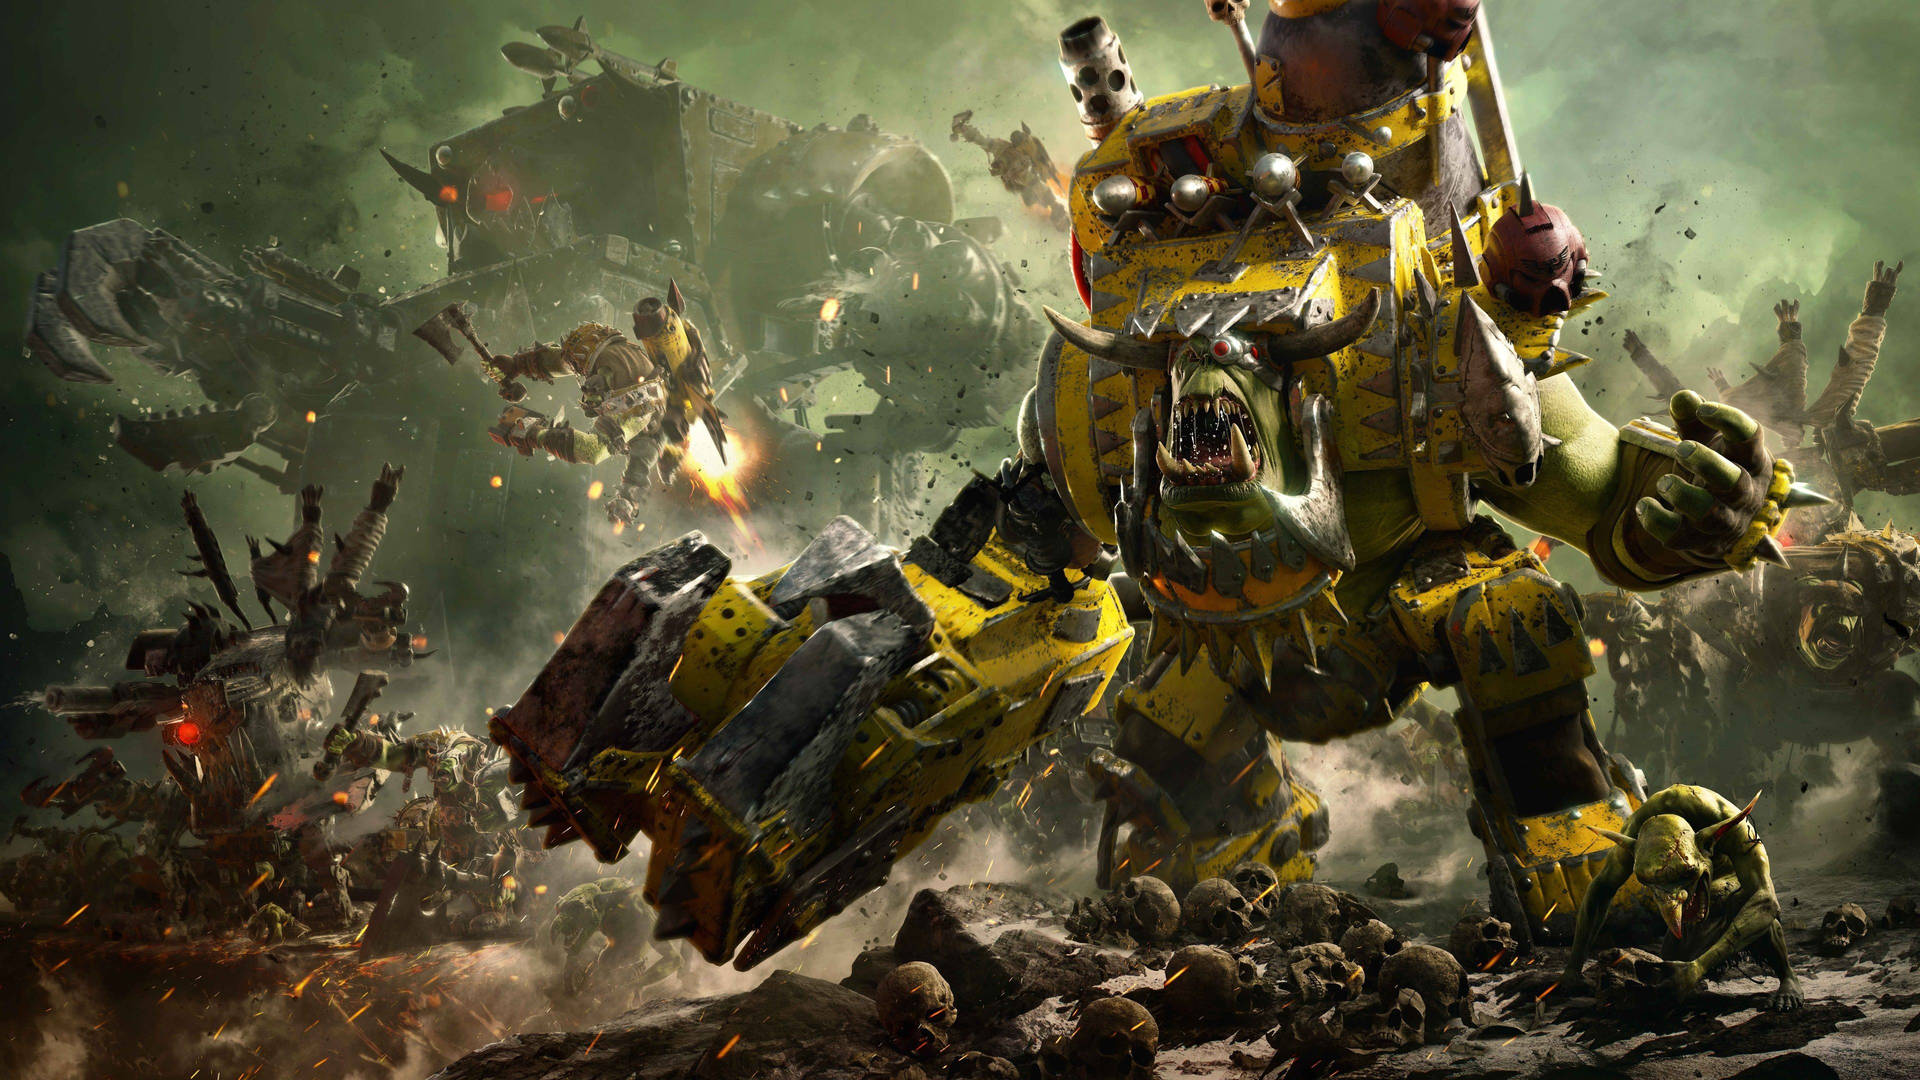 Yellow Robot Warhammer Wallpaper